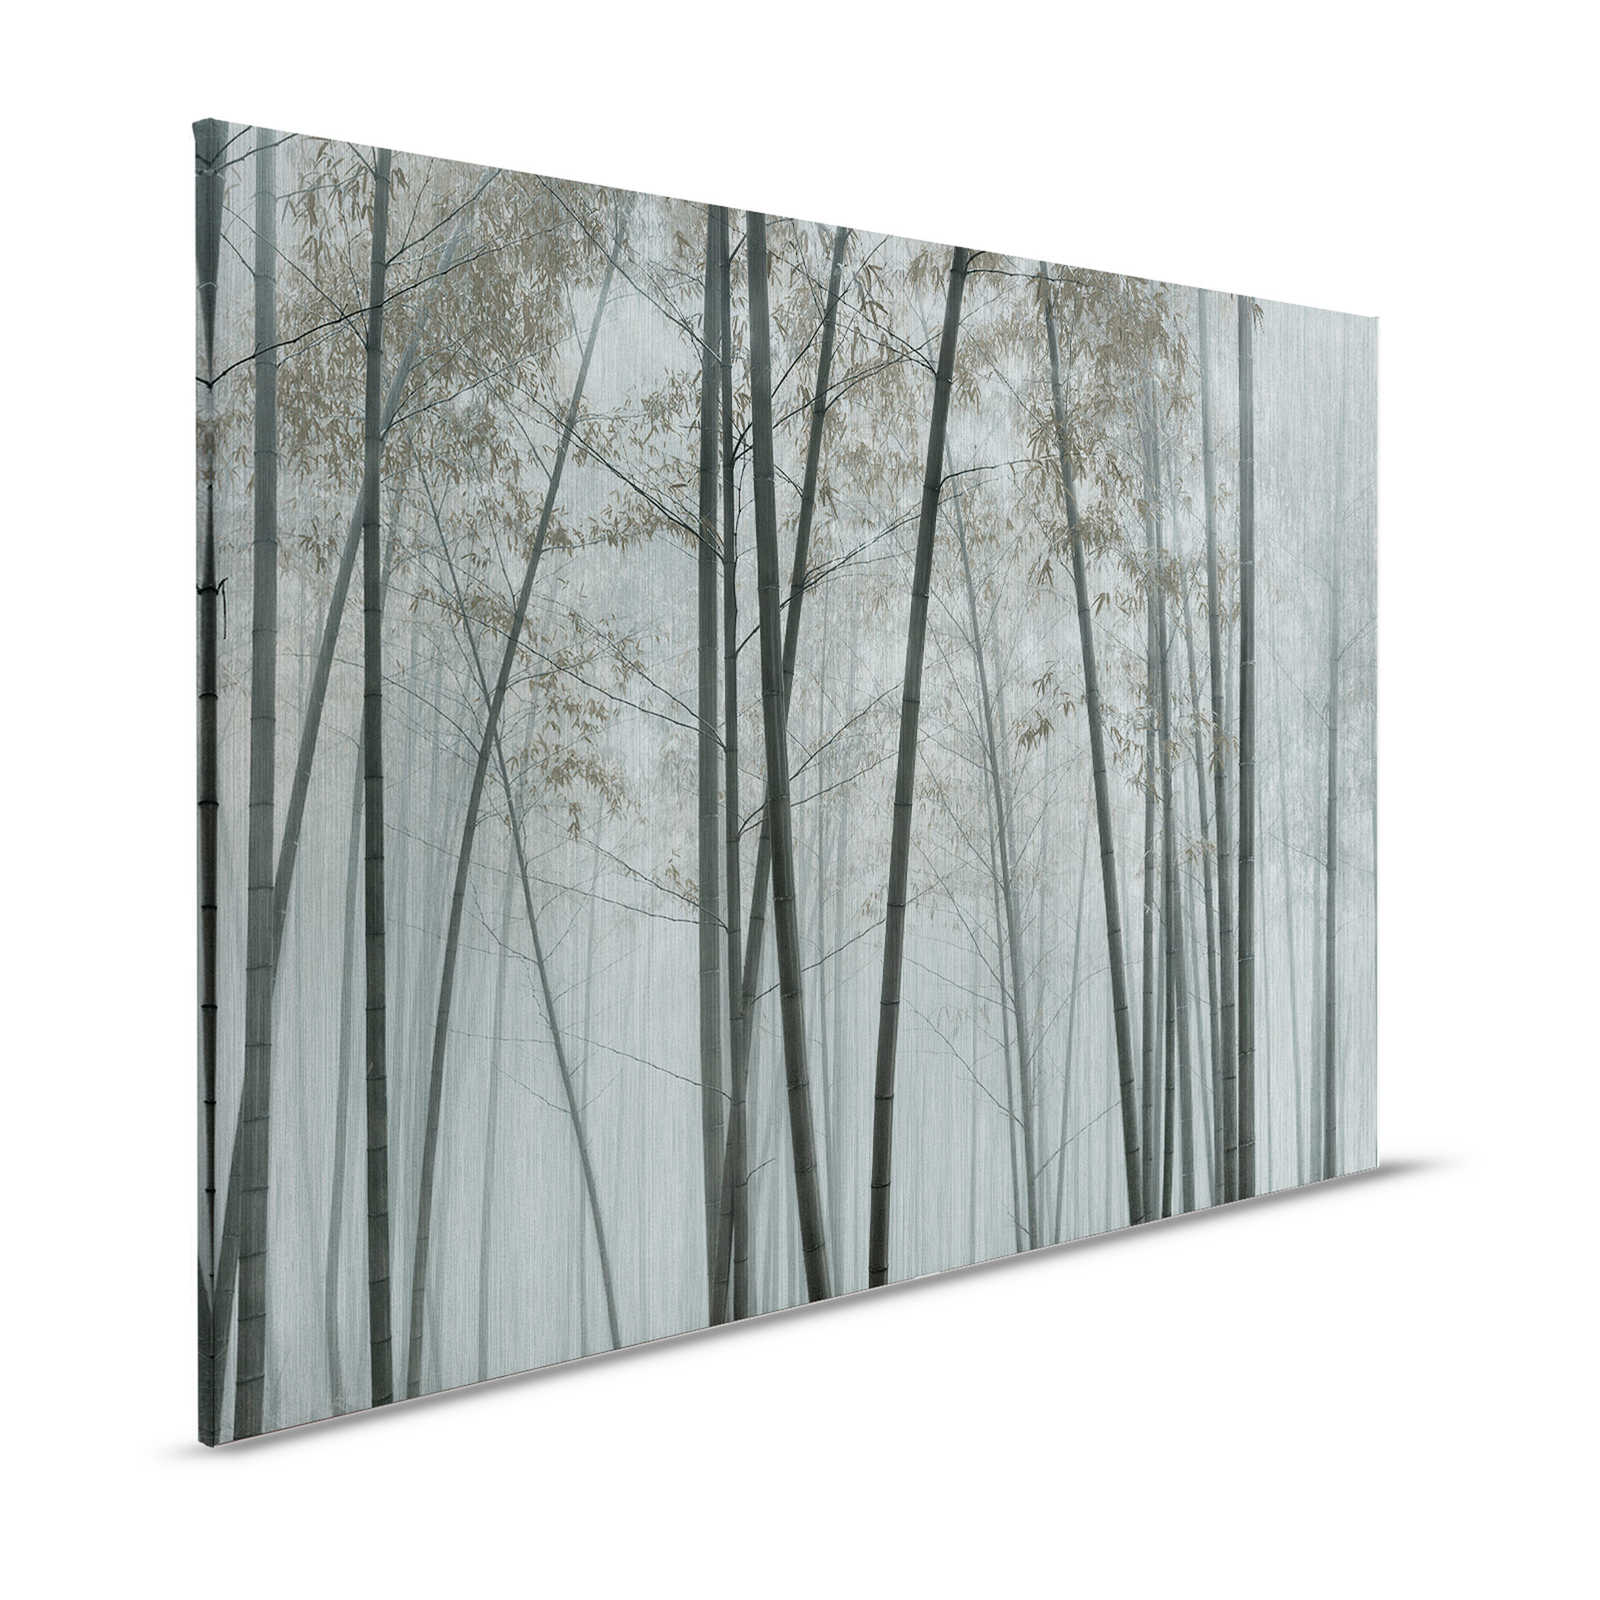 Nel bambù 1 - Quadro su tela di bambù Foresta di bambù nella nebbia - 1,20 m x 0,80 m
